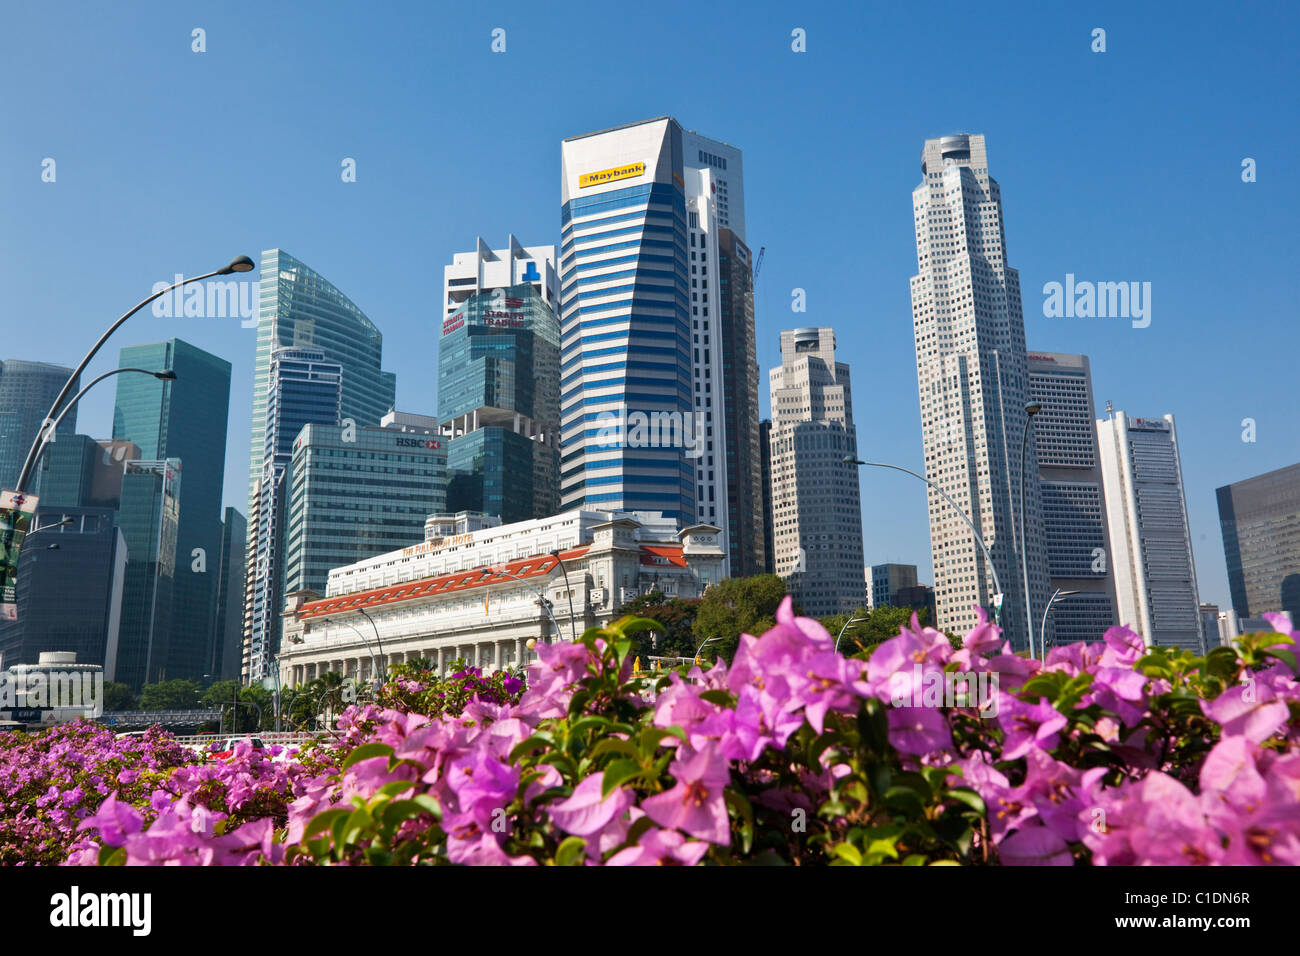 Le quartier central des affaires d'horizon. Marina Bay, Singapour Banque D'Images